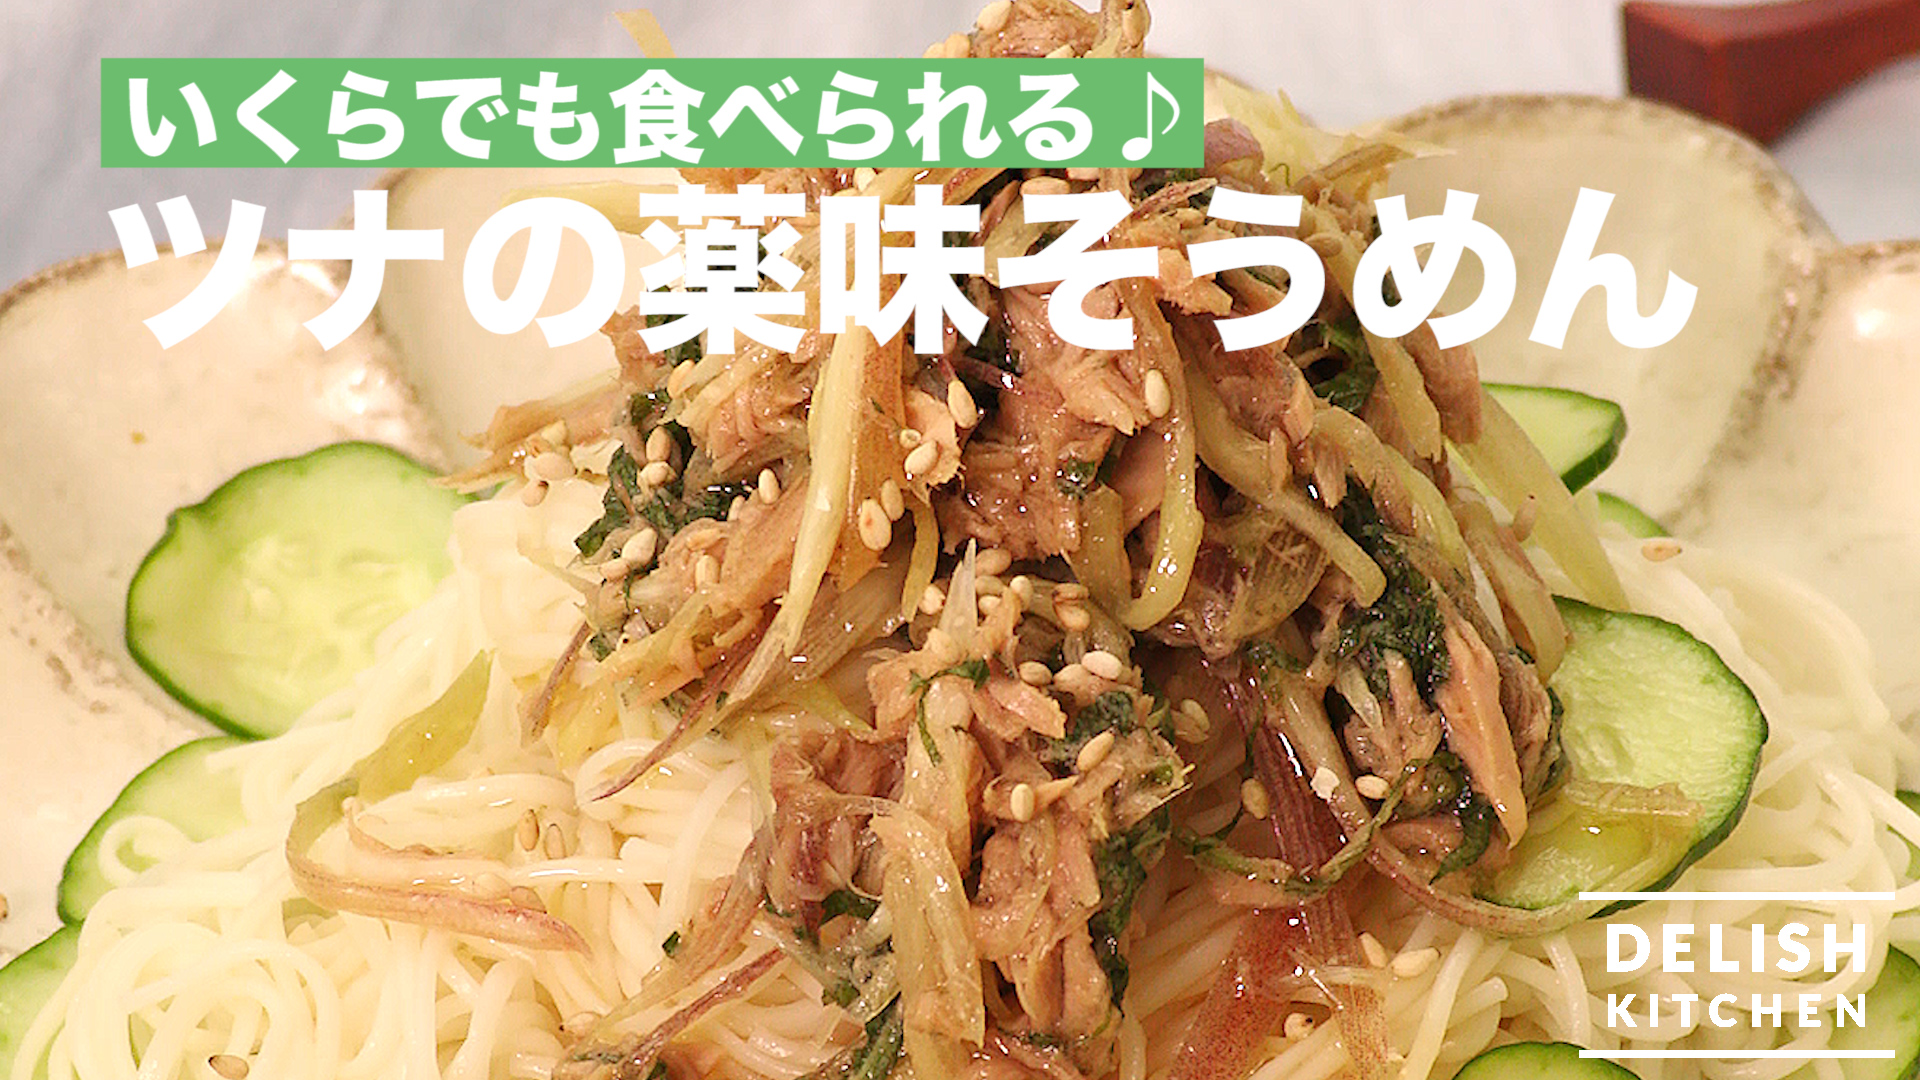 いくらでも食べられる ツナの薬味そうめん How To Make Somen With Tuna And Spices Delish Kitchen デリッシュキッチン Yahoo Japan